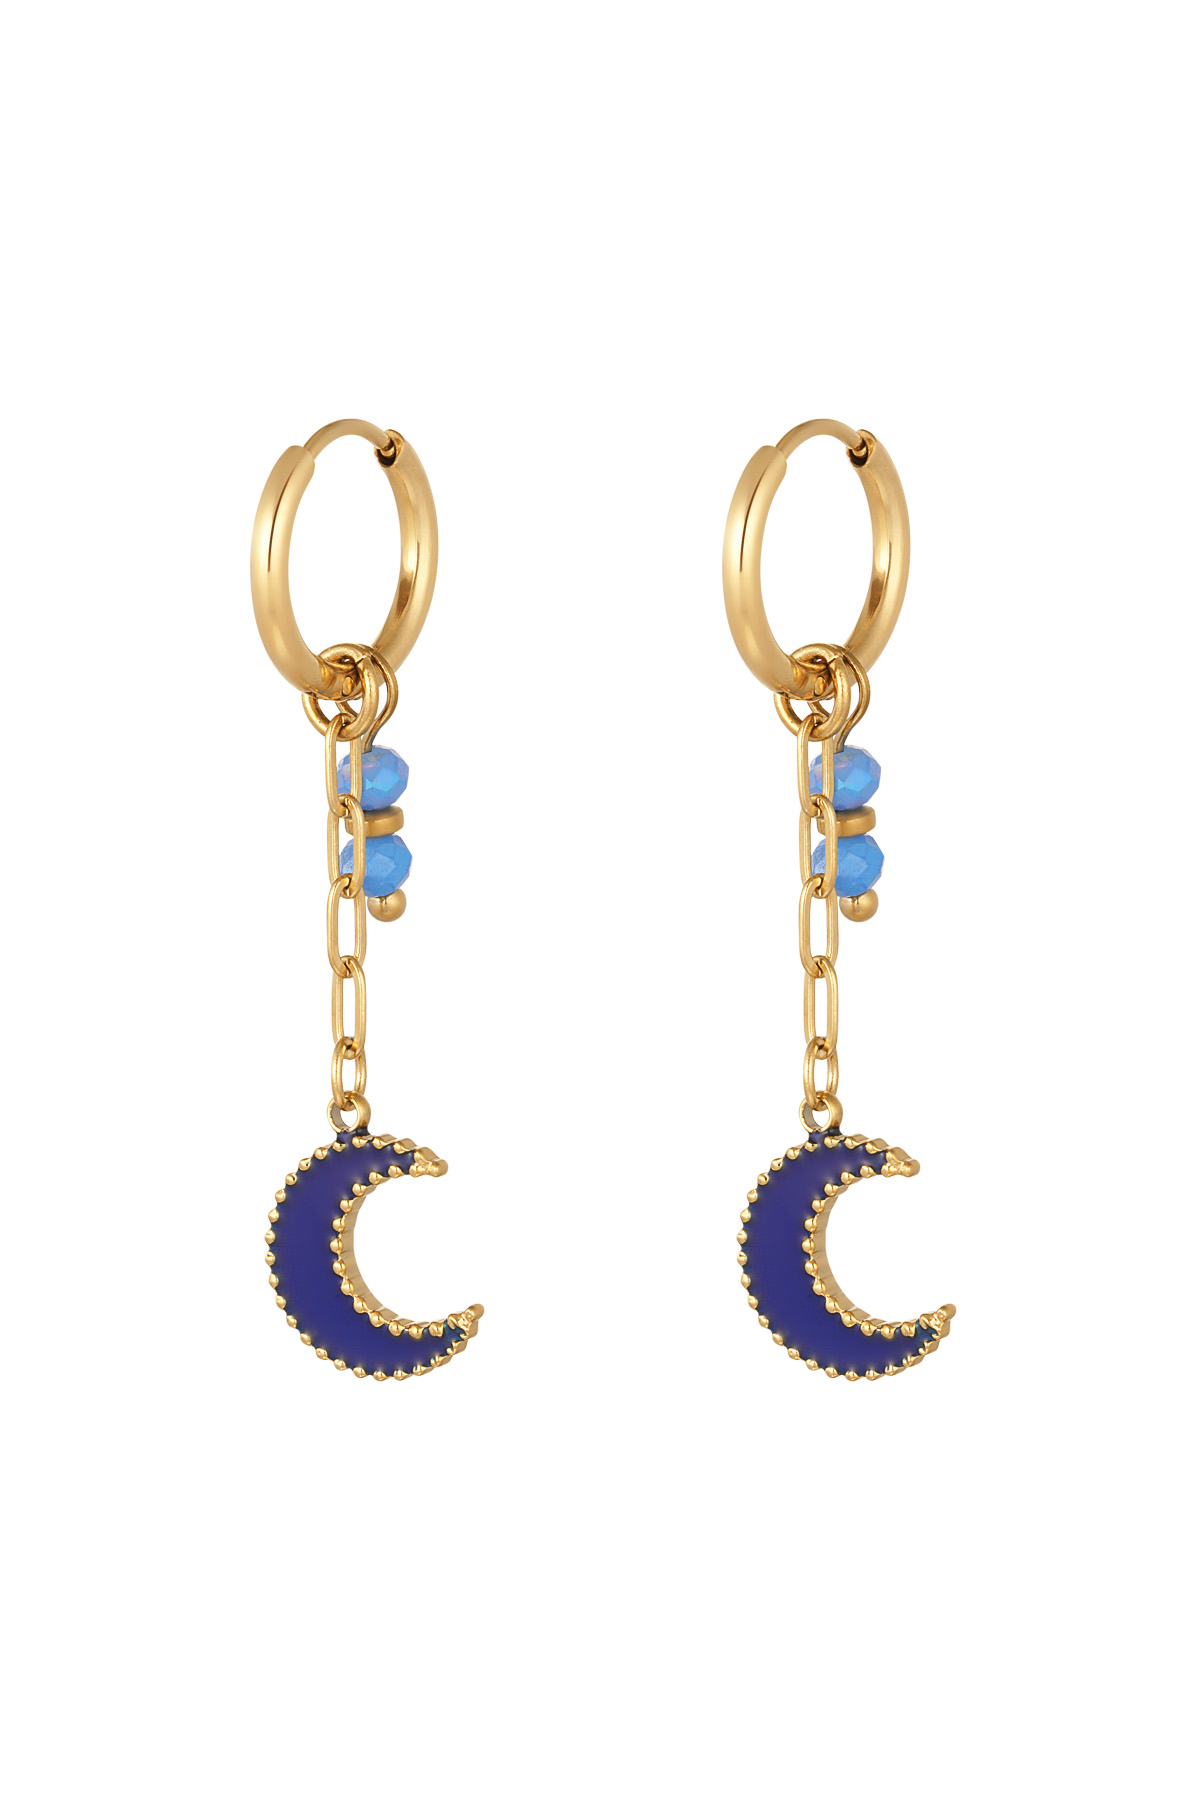 Ohrringe mit Perlen und Mondanhänger blau - gold